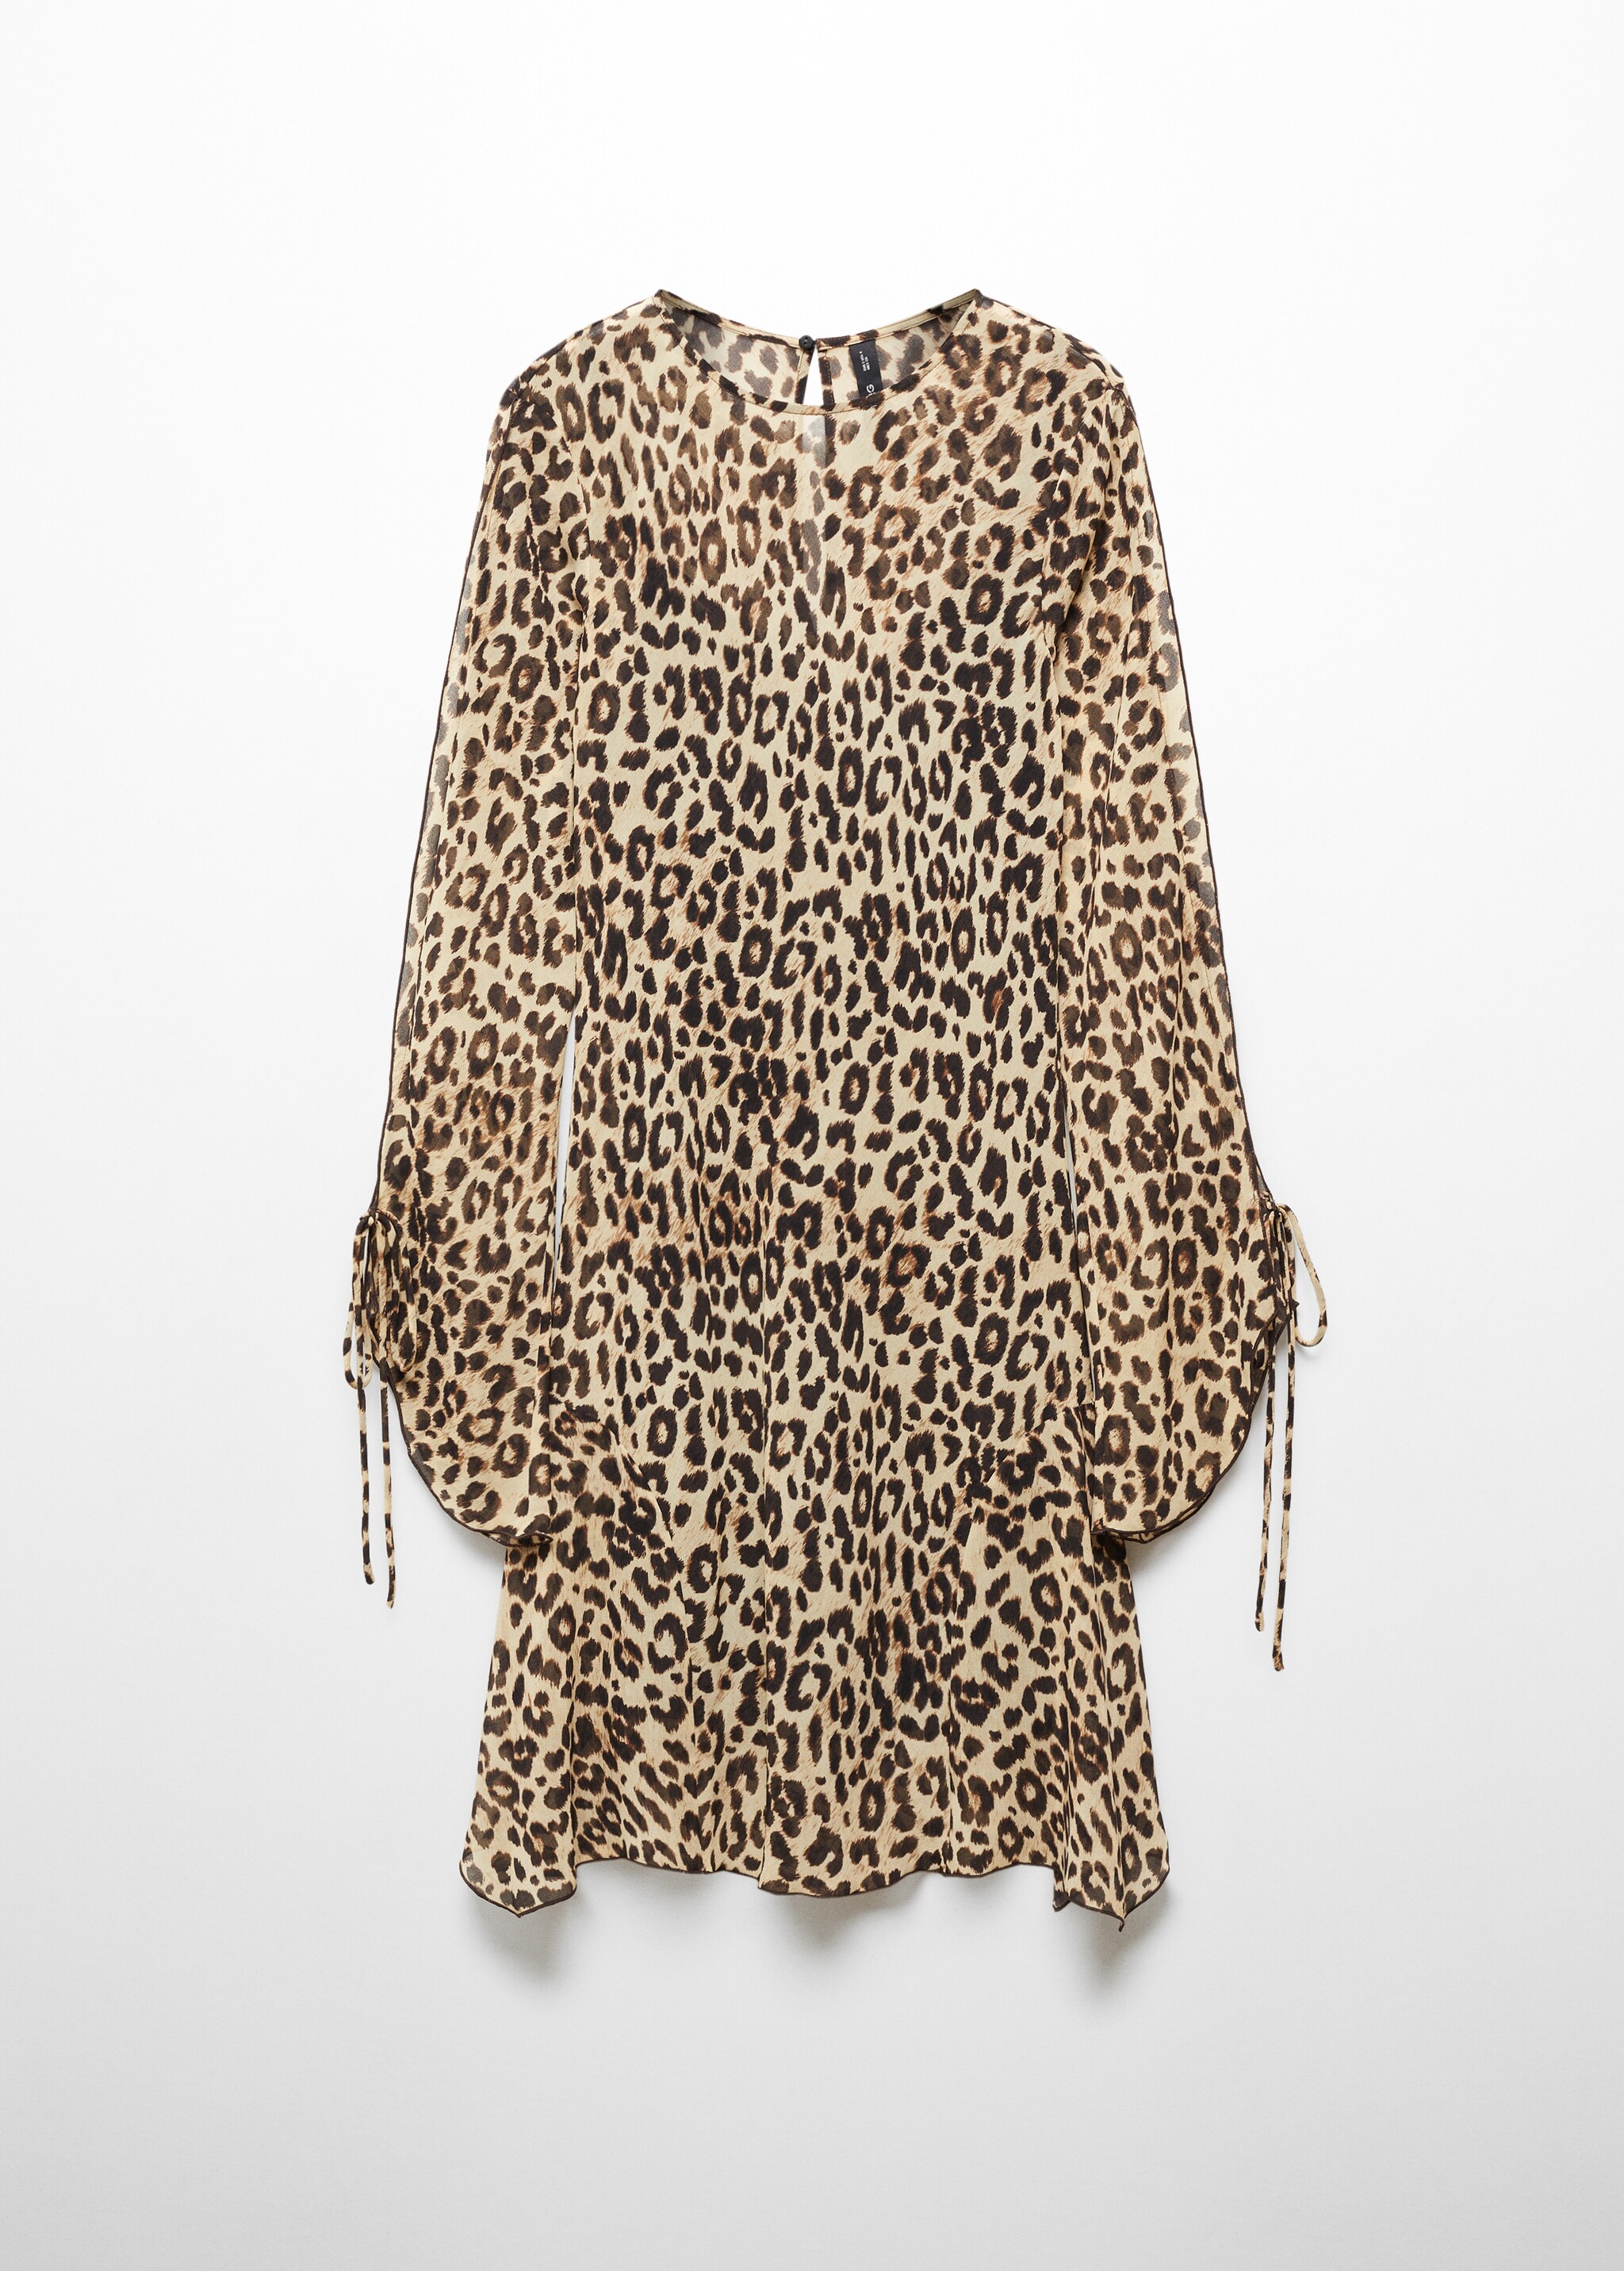 Vestito leopardo maniche scampanate - Articolo senza modello